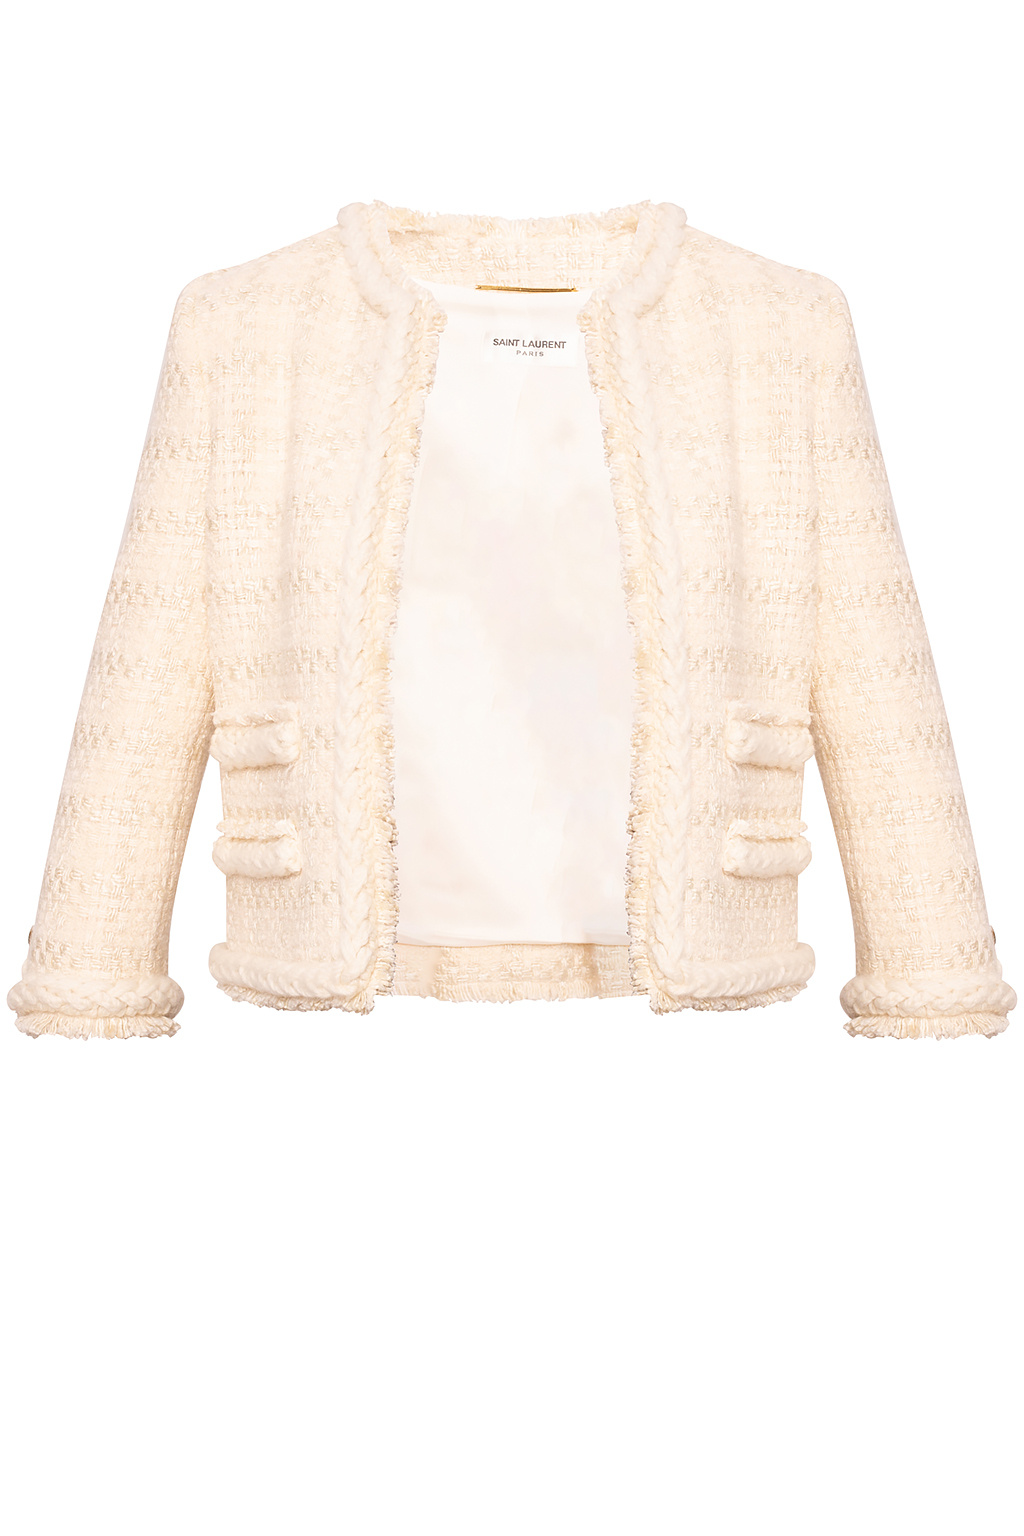 Saint Laurent Tweed blazer, Women's Clothing